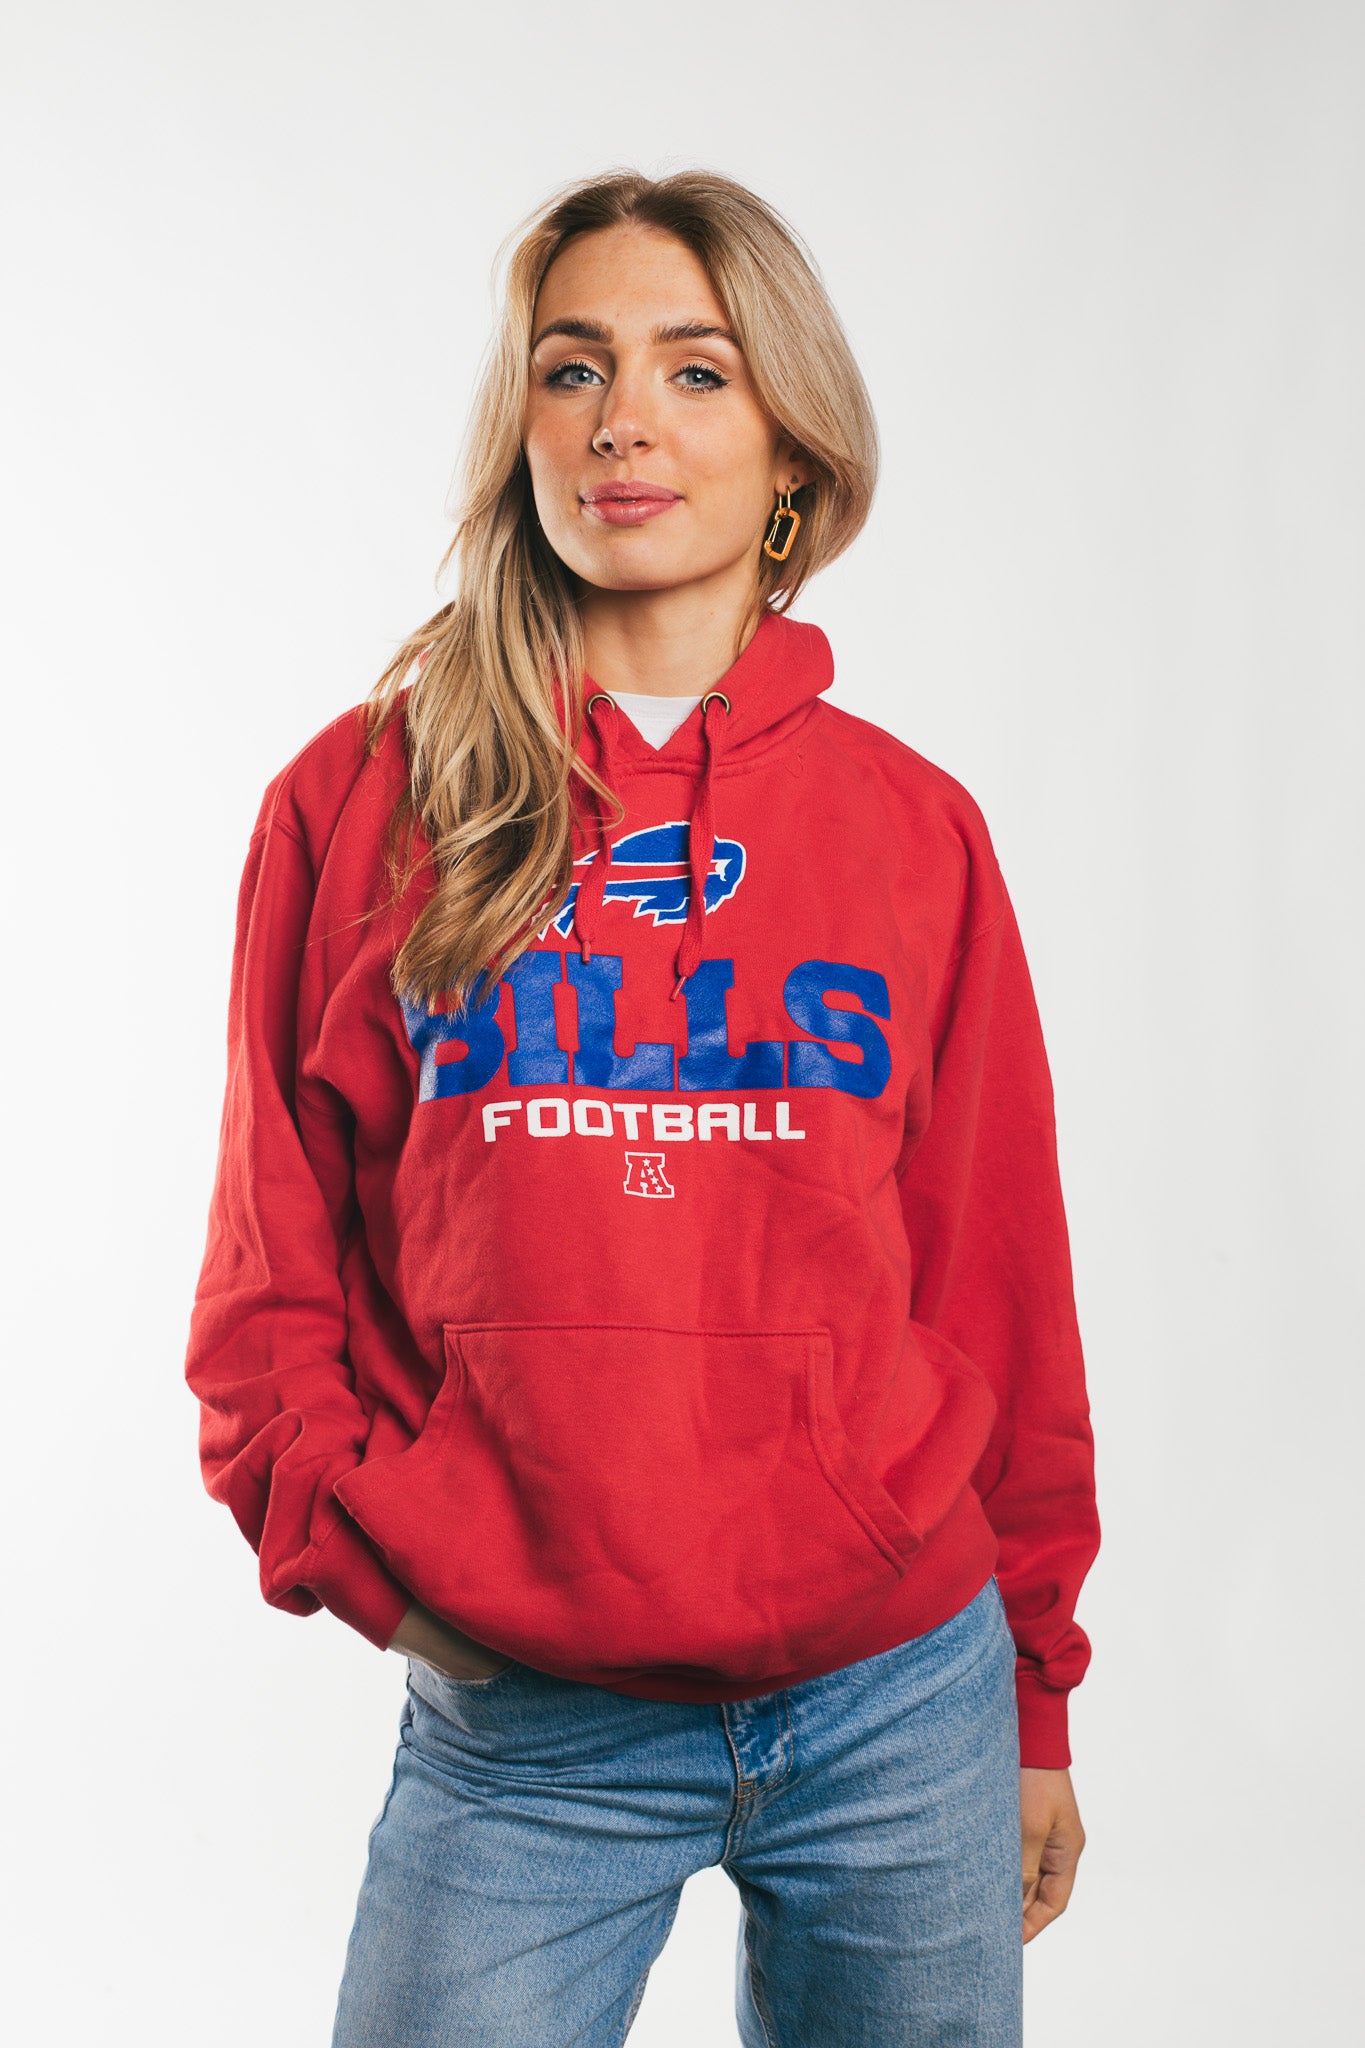 Bills Football - Hoodie (M)